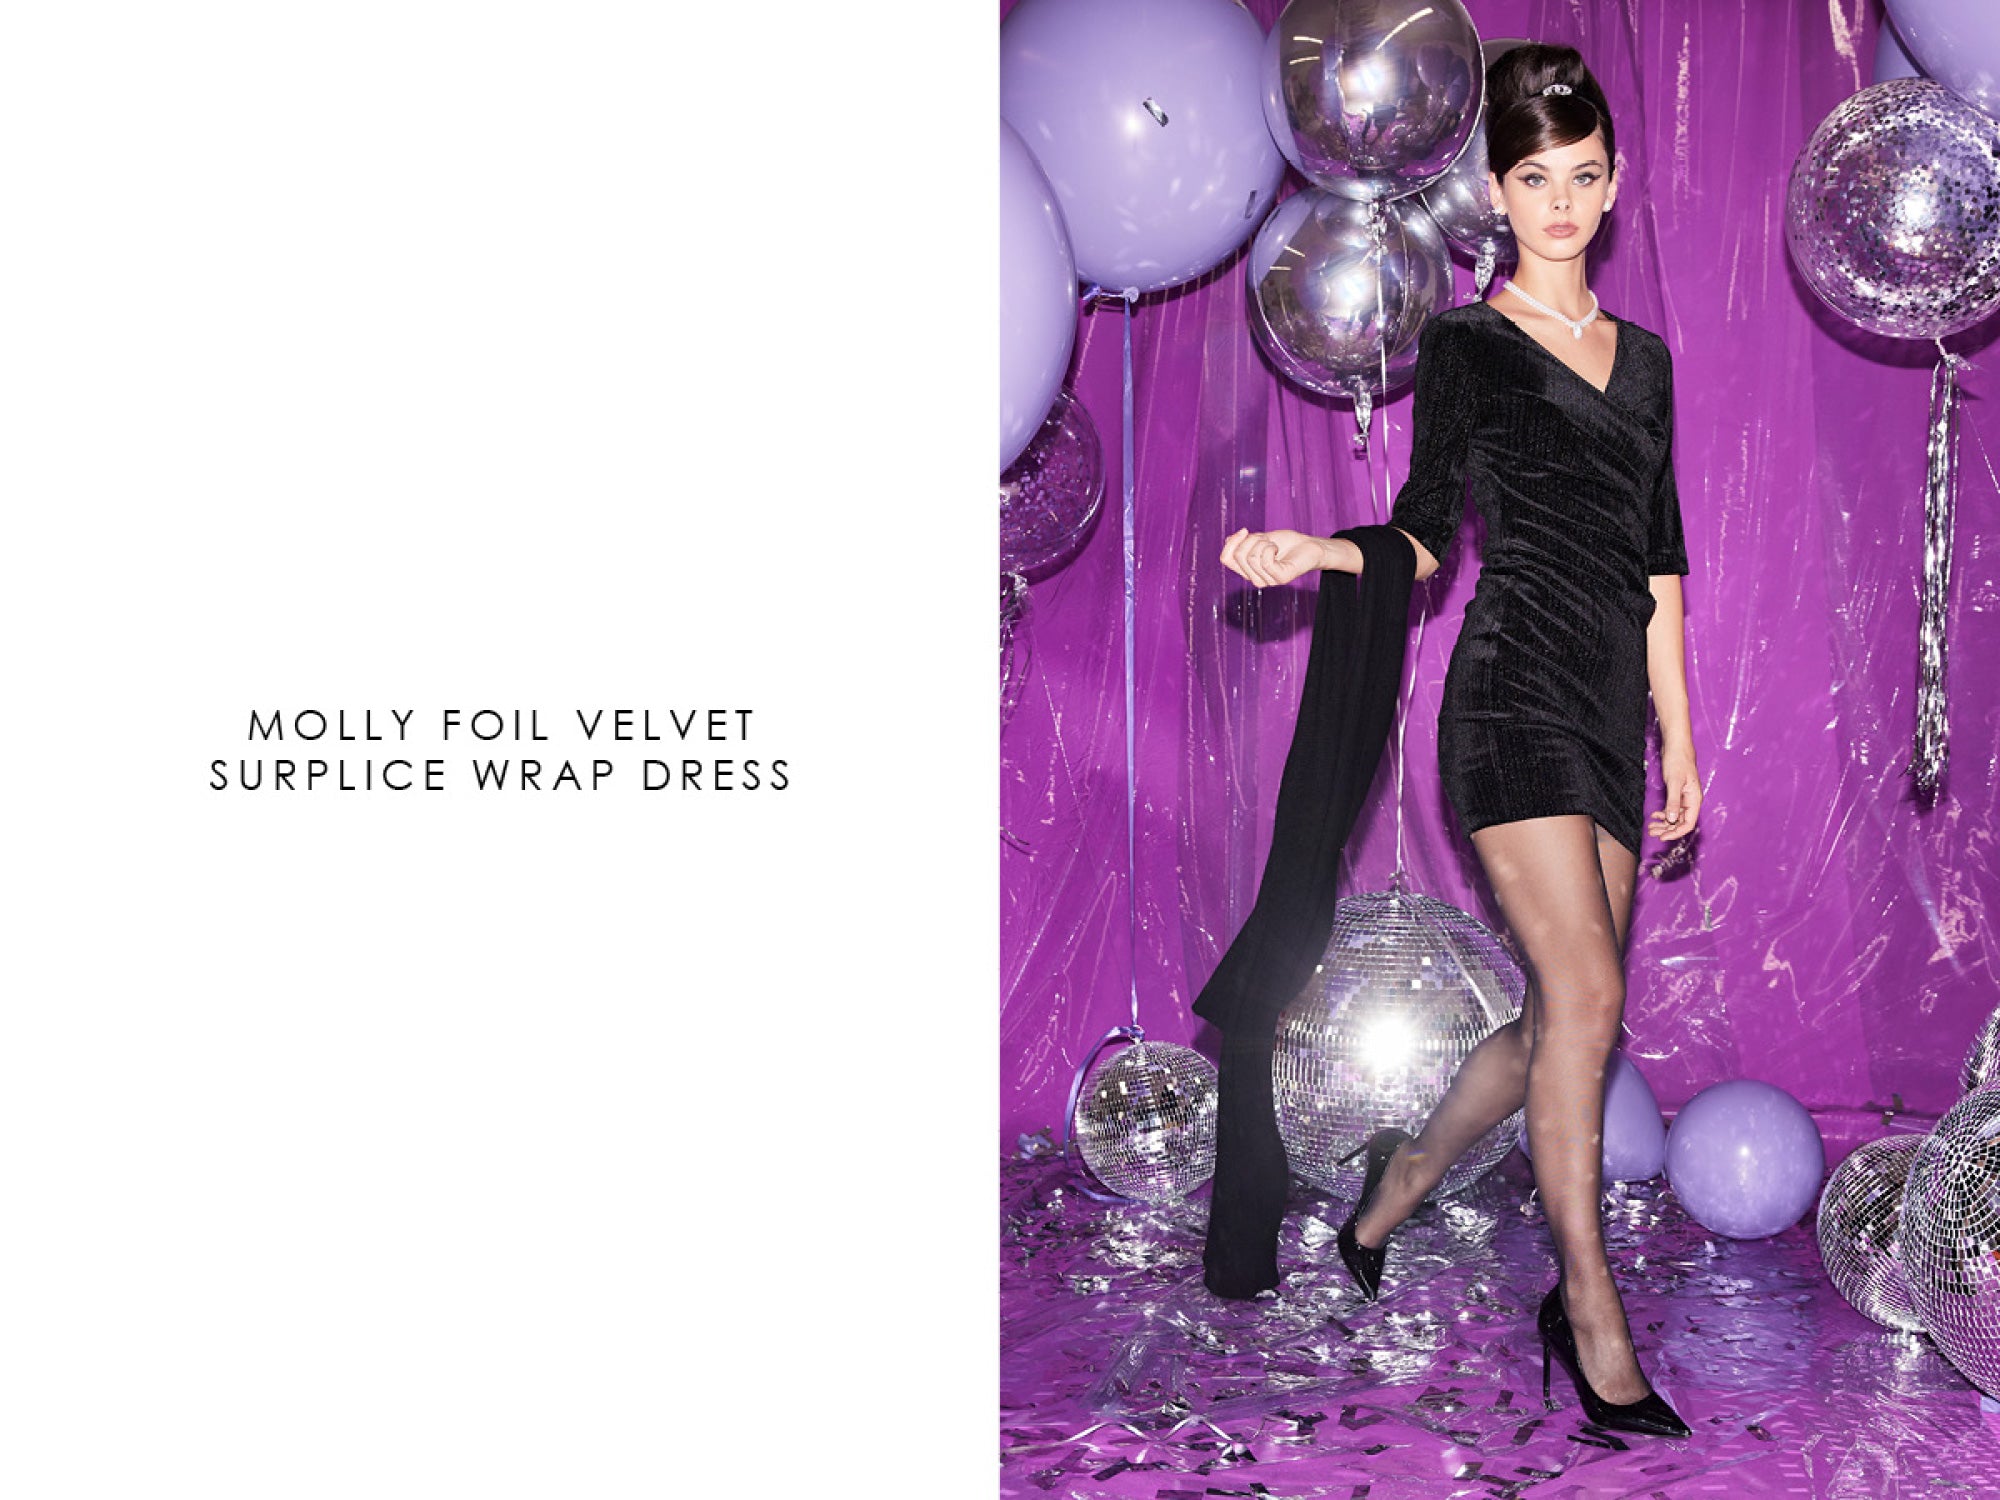 Molly foil velvet surplice wrap dress